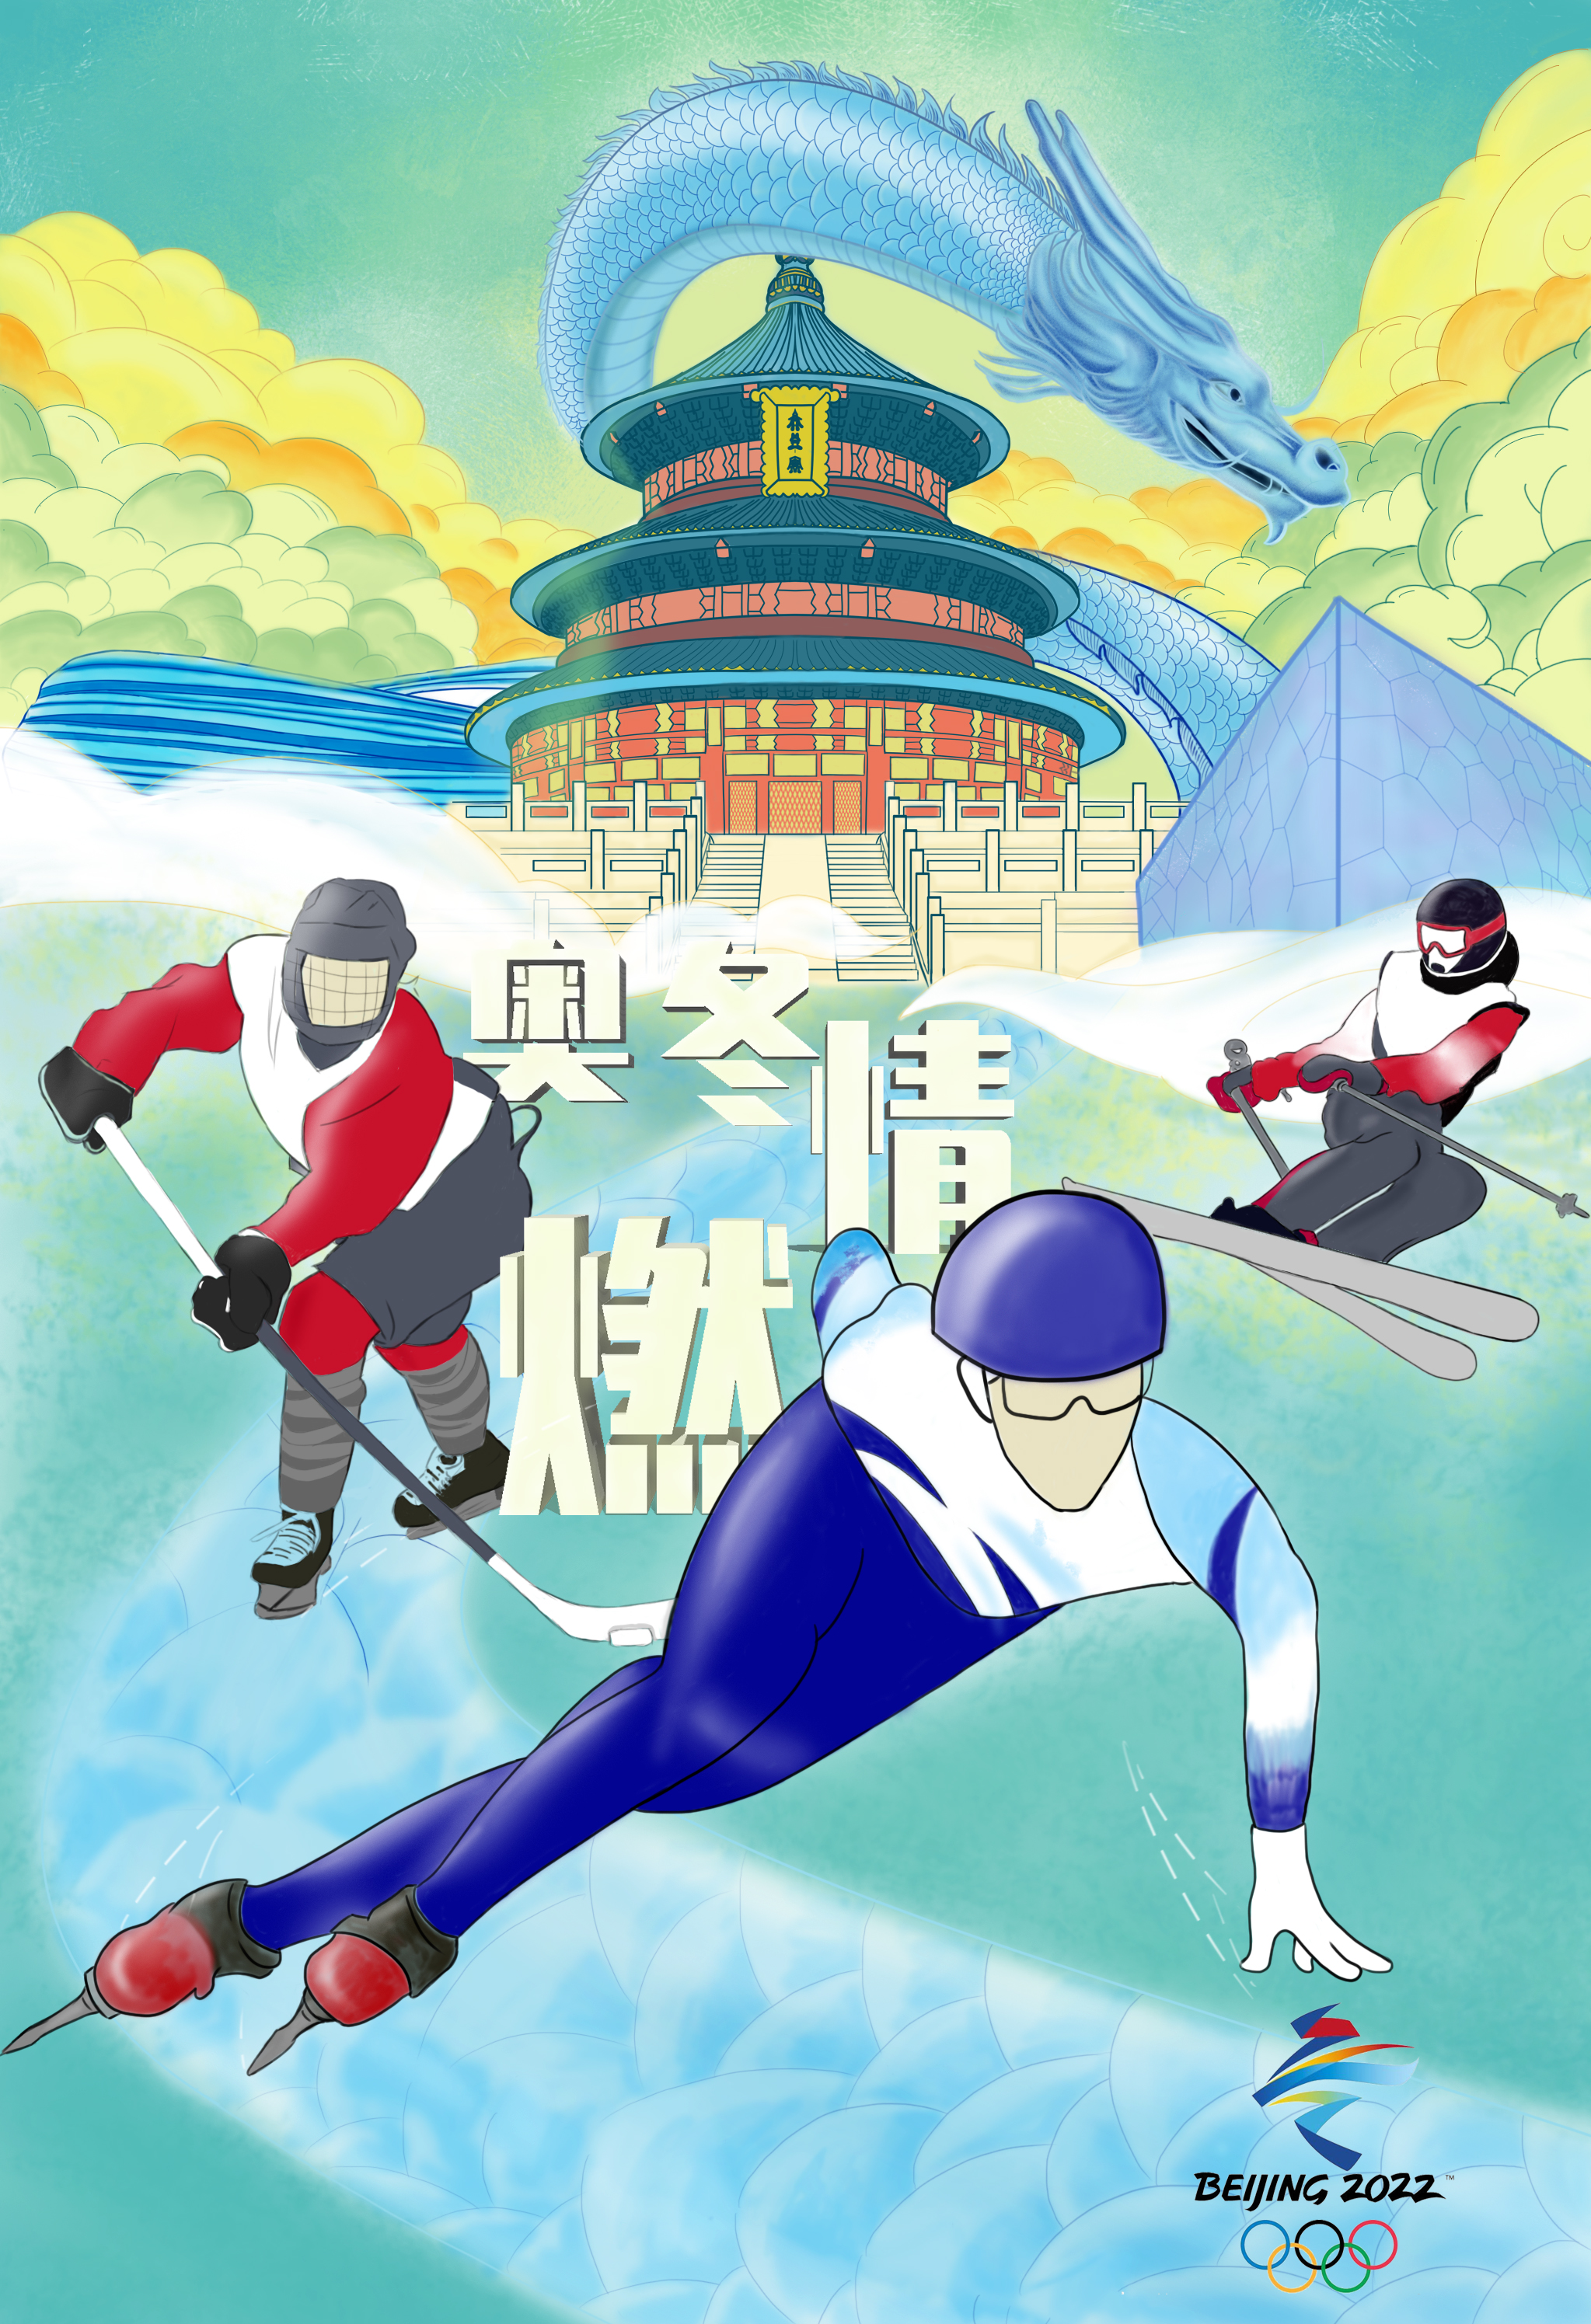 2022年奥运会海报图片